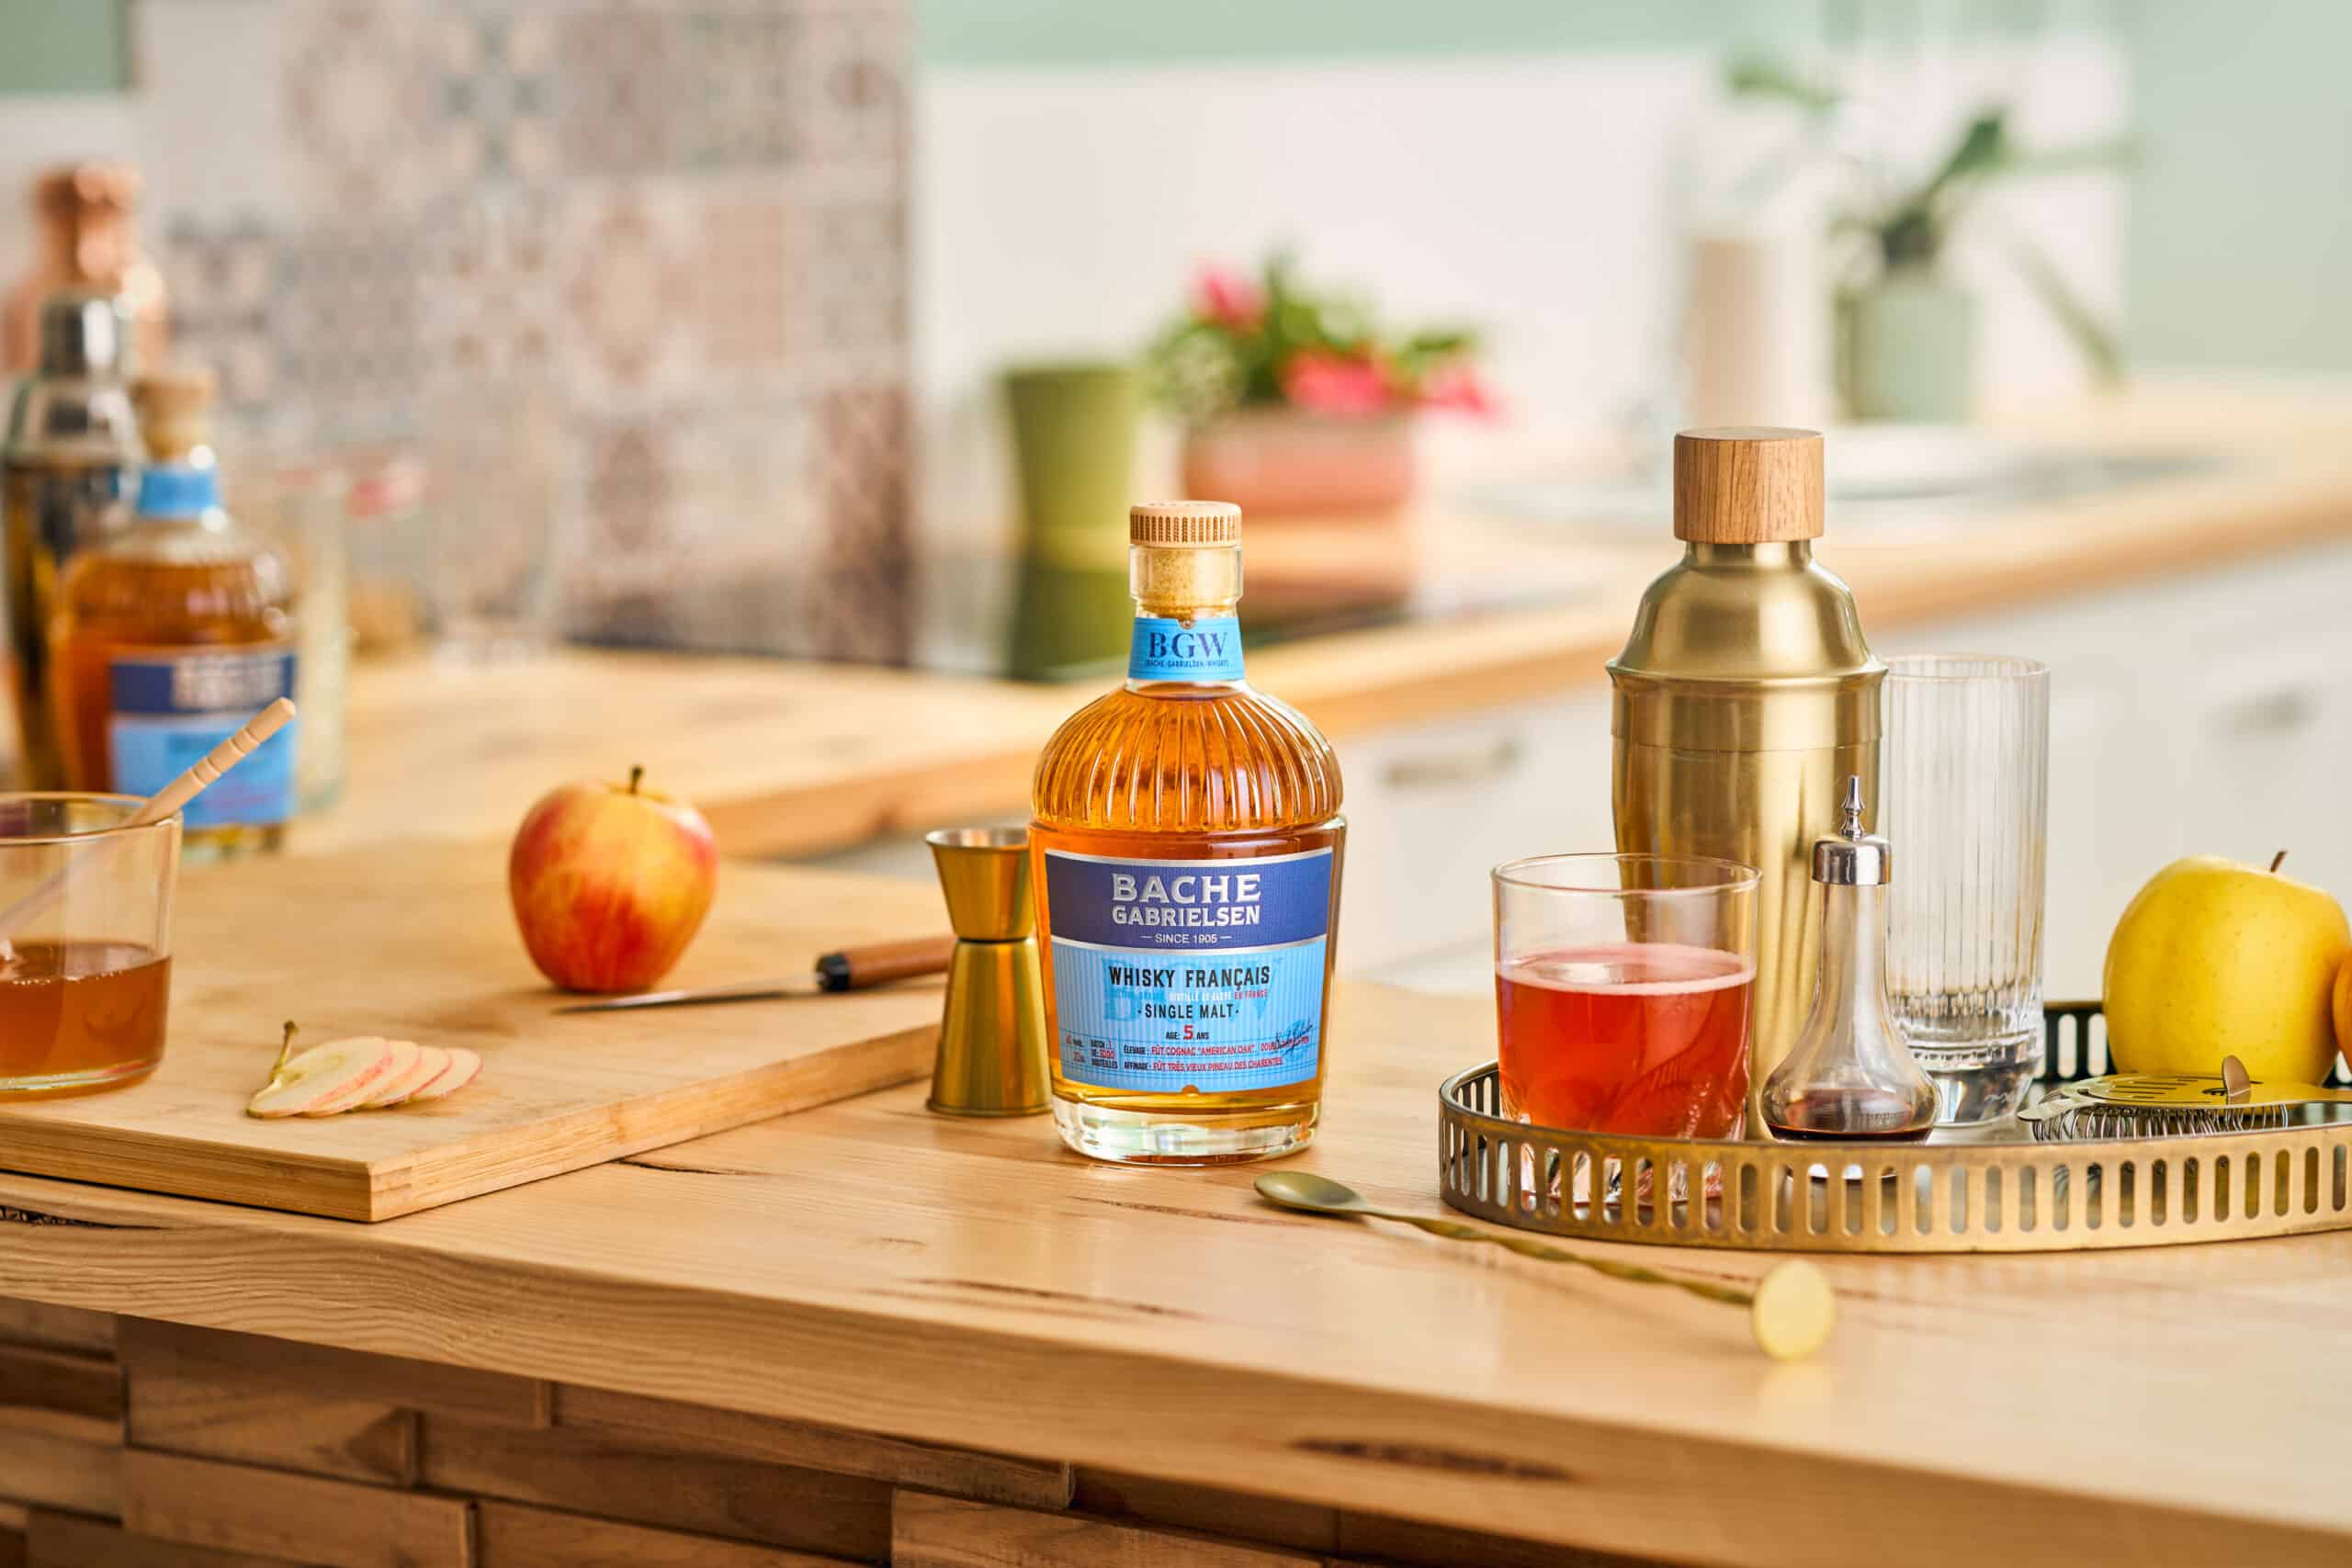 Photo du Whisky français Bache-Gabrielsen posé sur une table de cuisine avec une pomme, du miel et un shaker